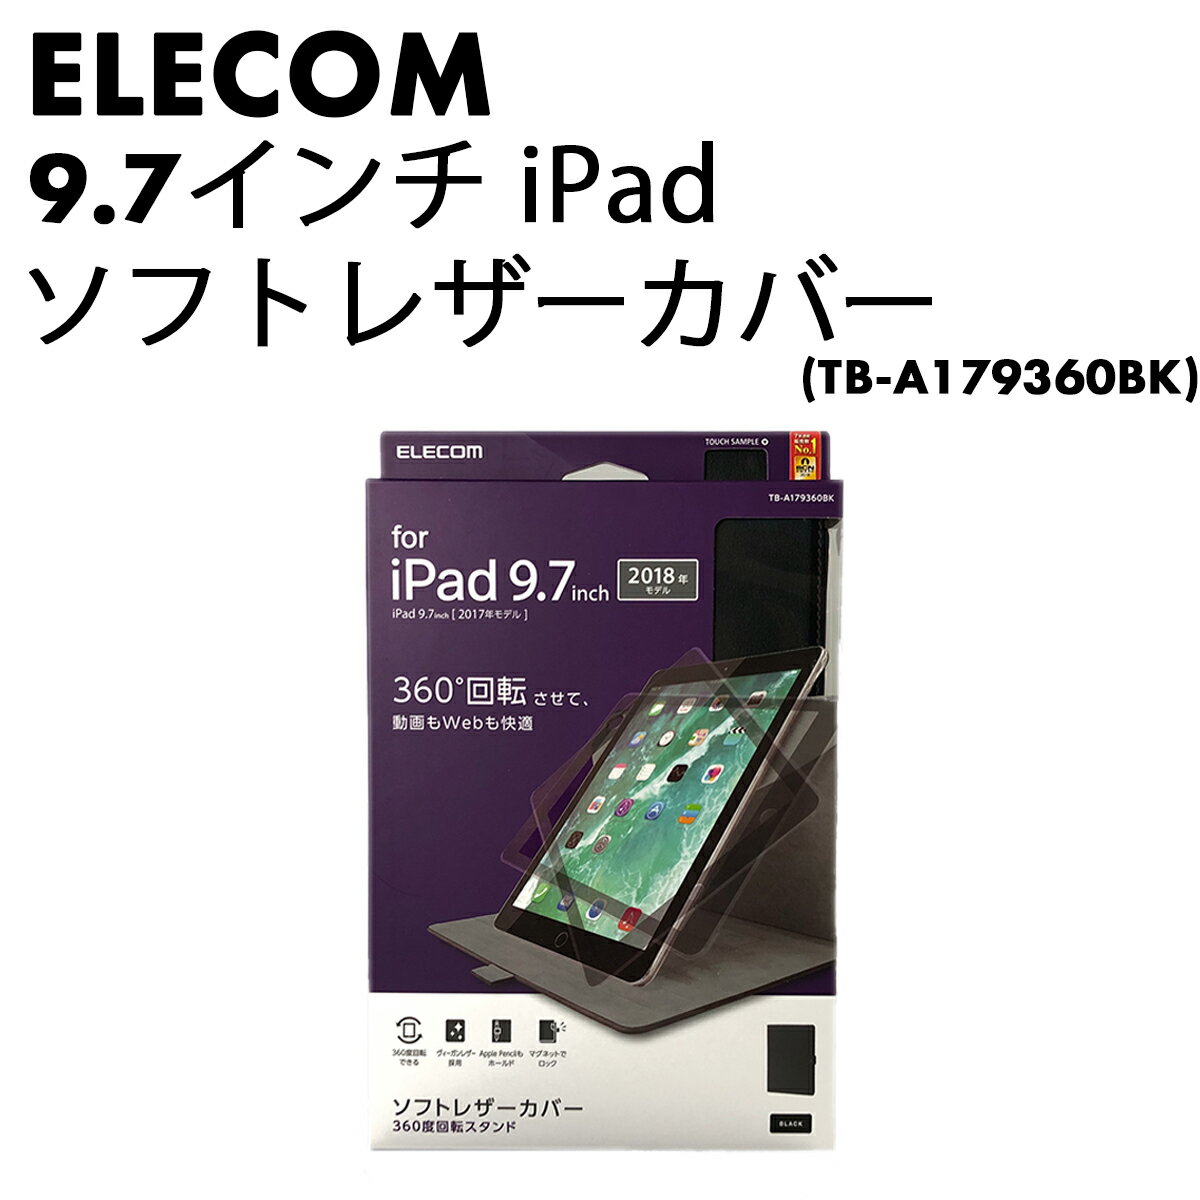 【送料無料】ELECOM 9.7インチiPad ソフトレザー